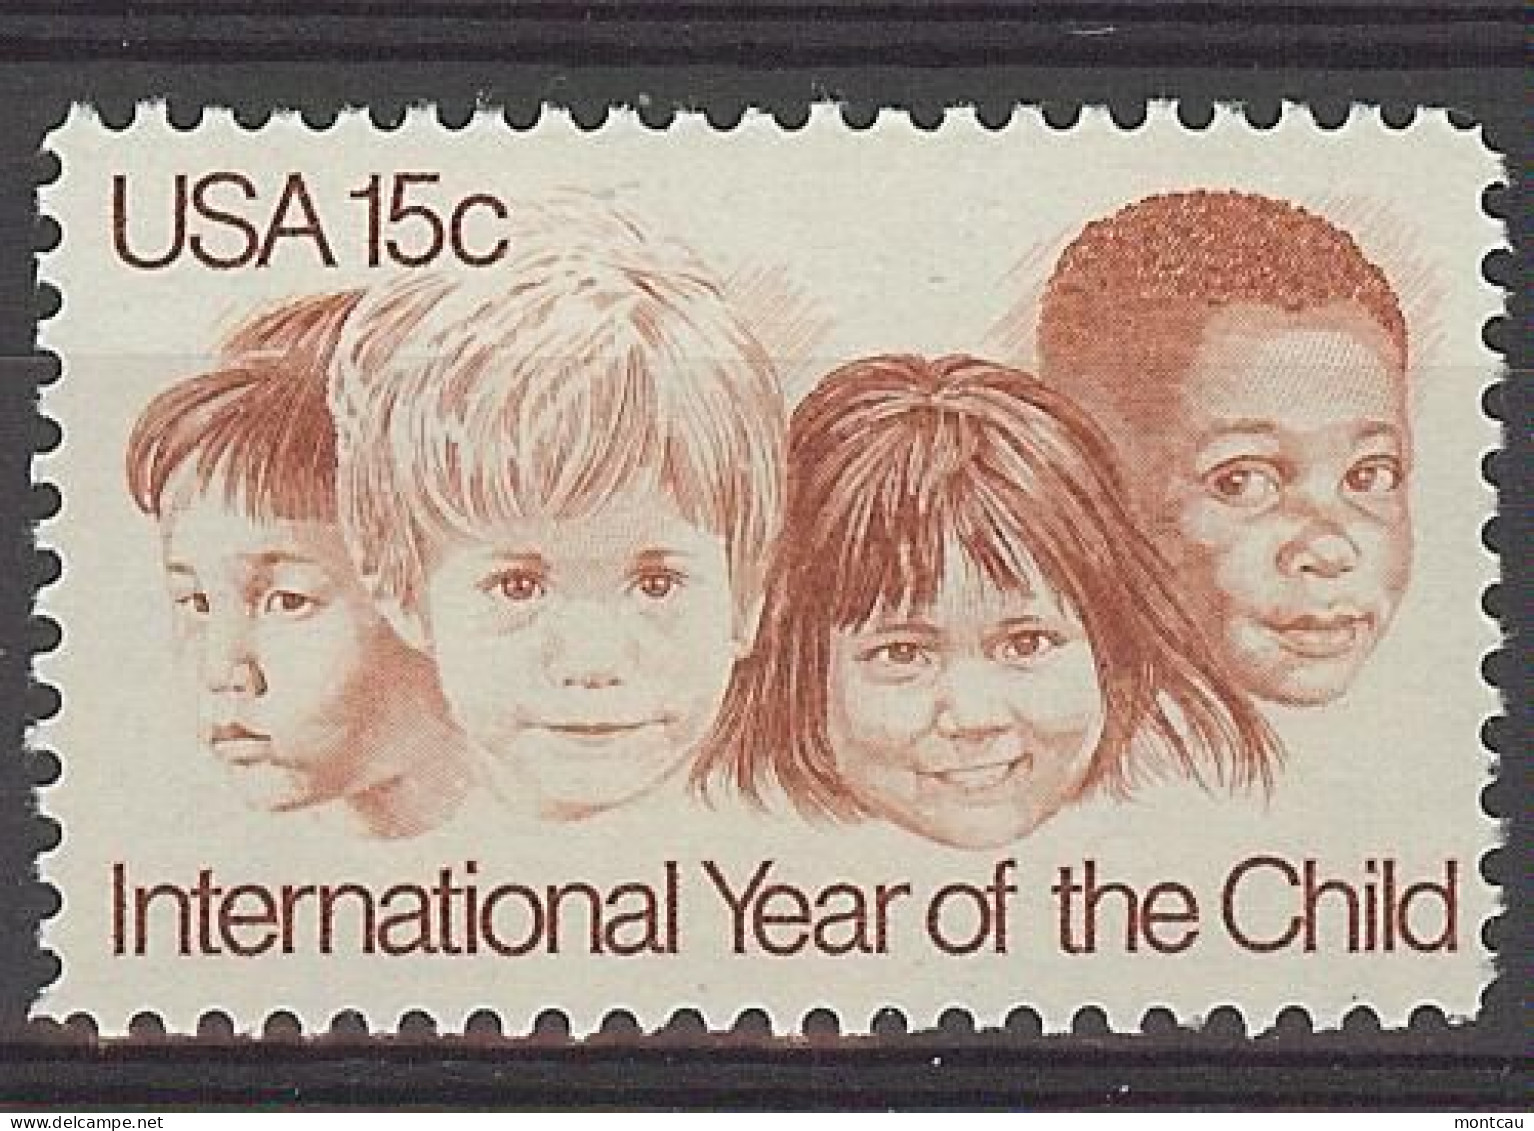 USA 1979.  Year Od The Child Sn 1772  (**) - Ungebraucht